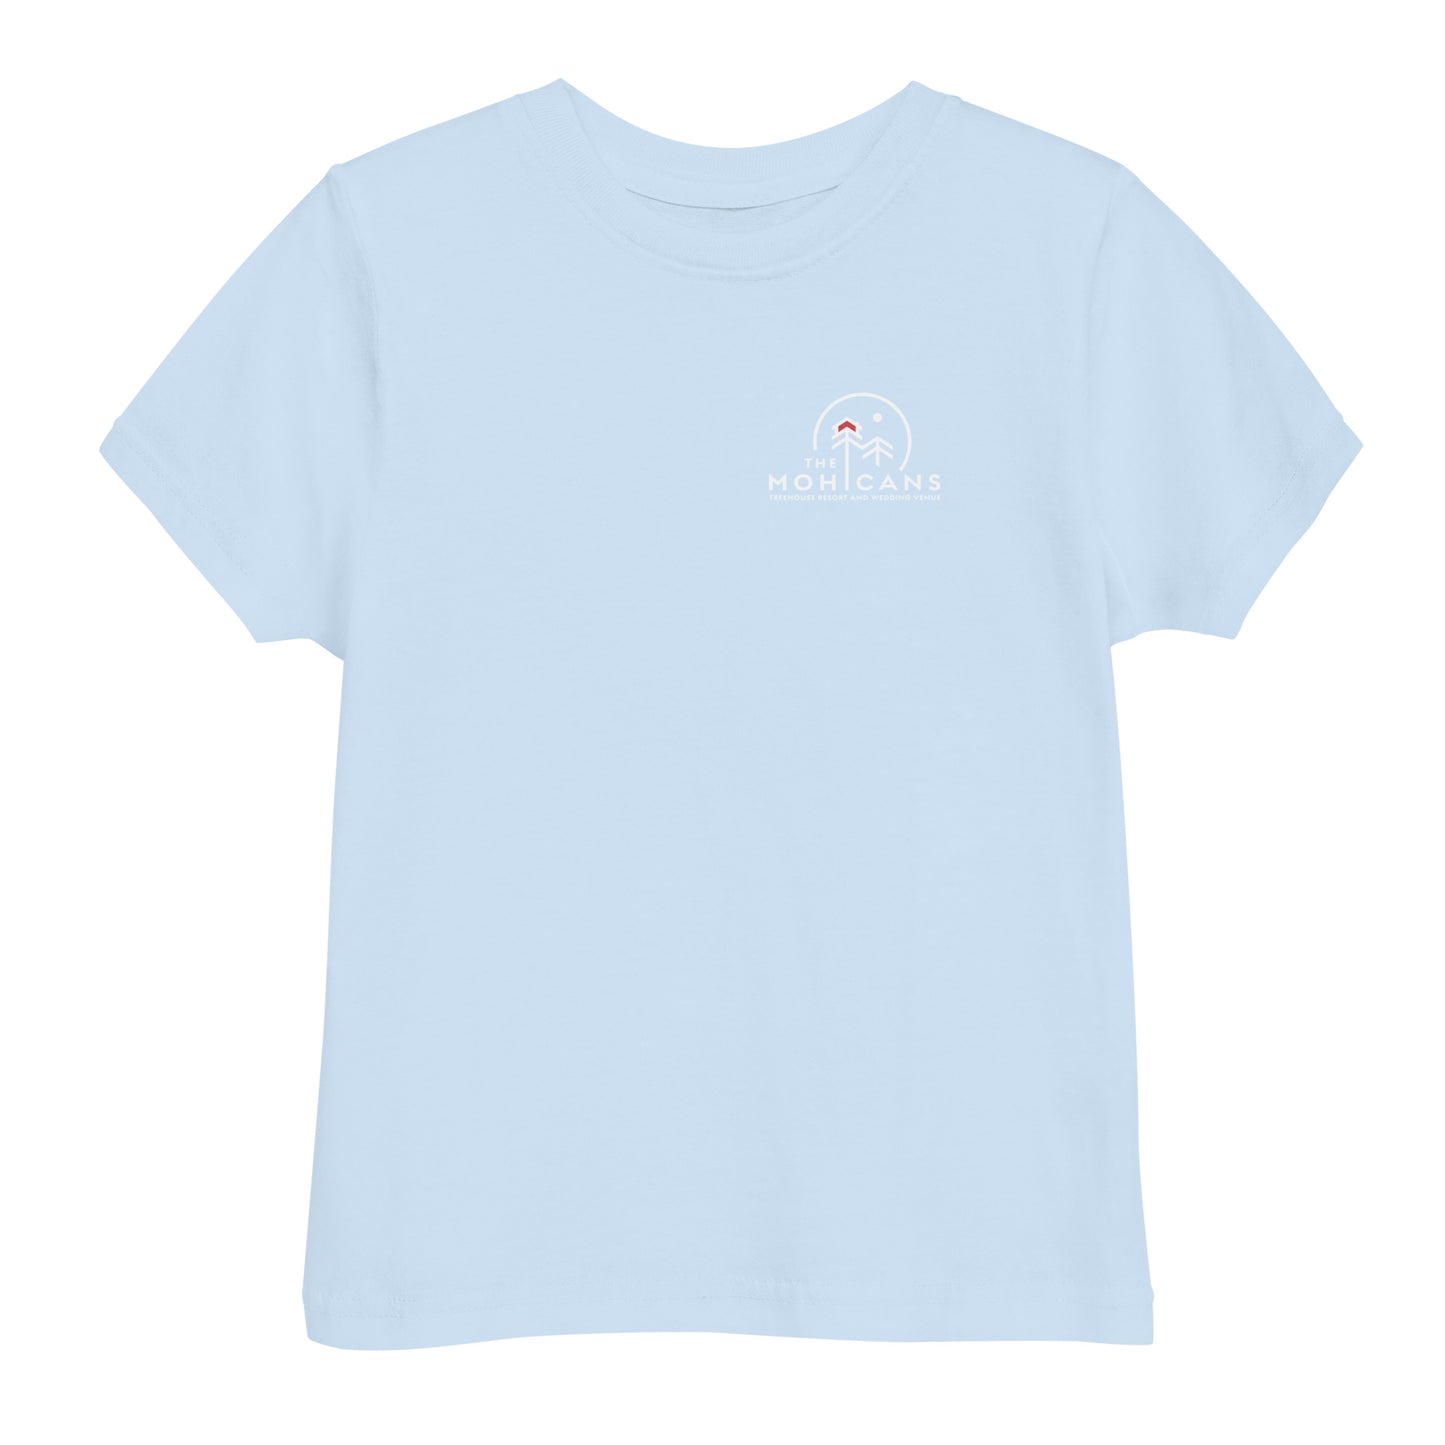 Moonlight Toddler jersey t-shirt